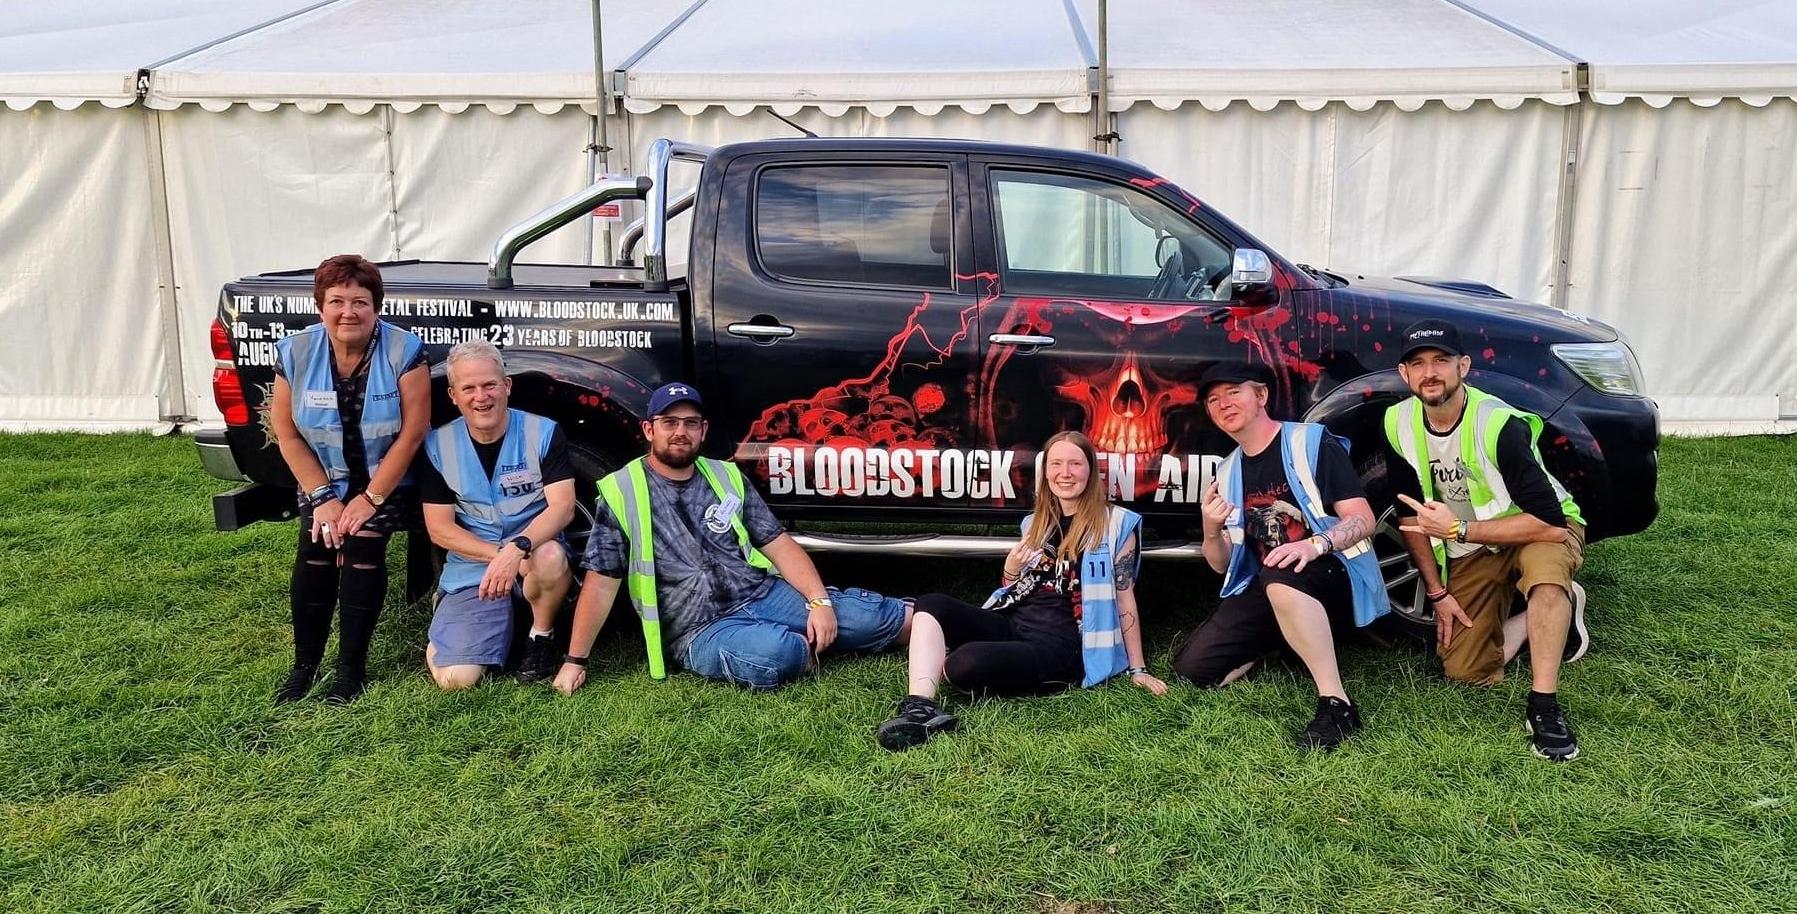 Festaff volunteers looking forward to Bloodstock 2024